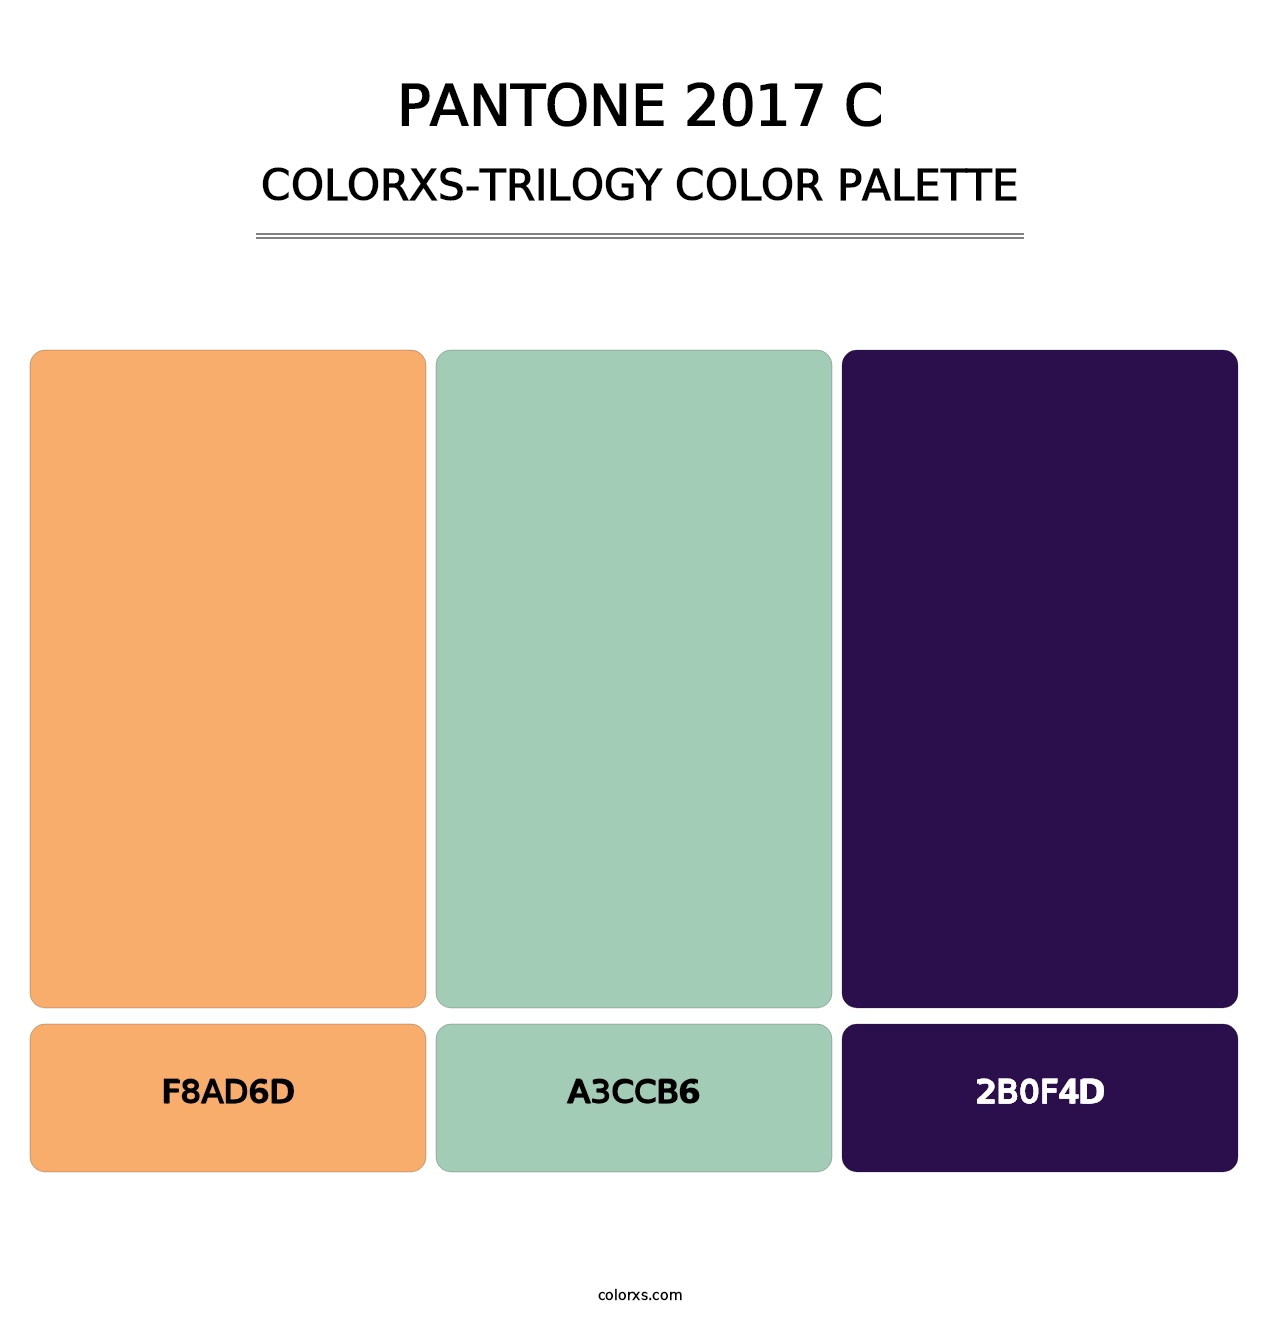 PANTONE 2017 C - Colorxs Trilogy Palette